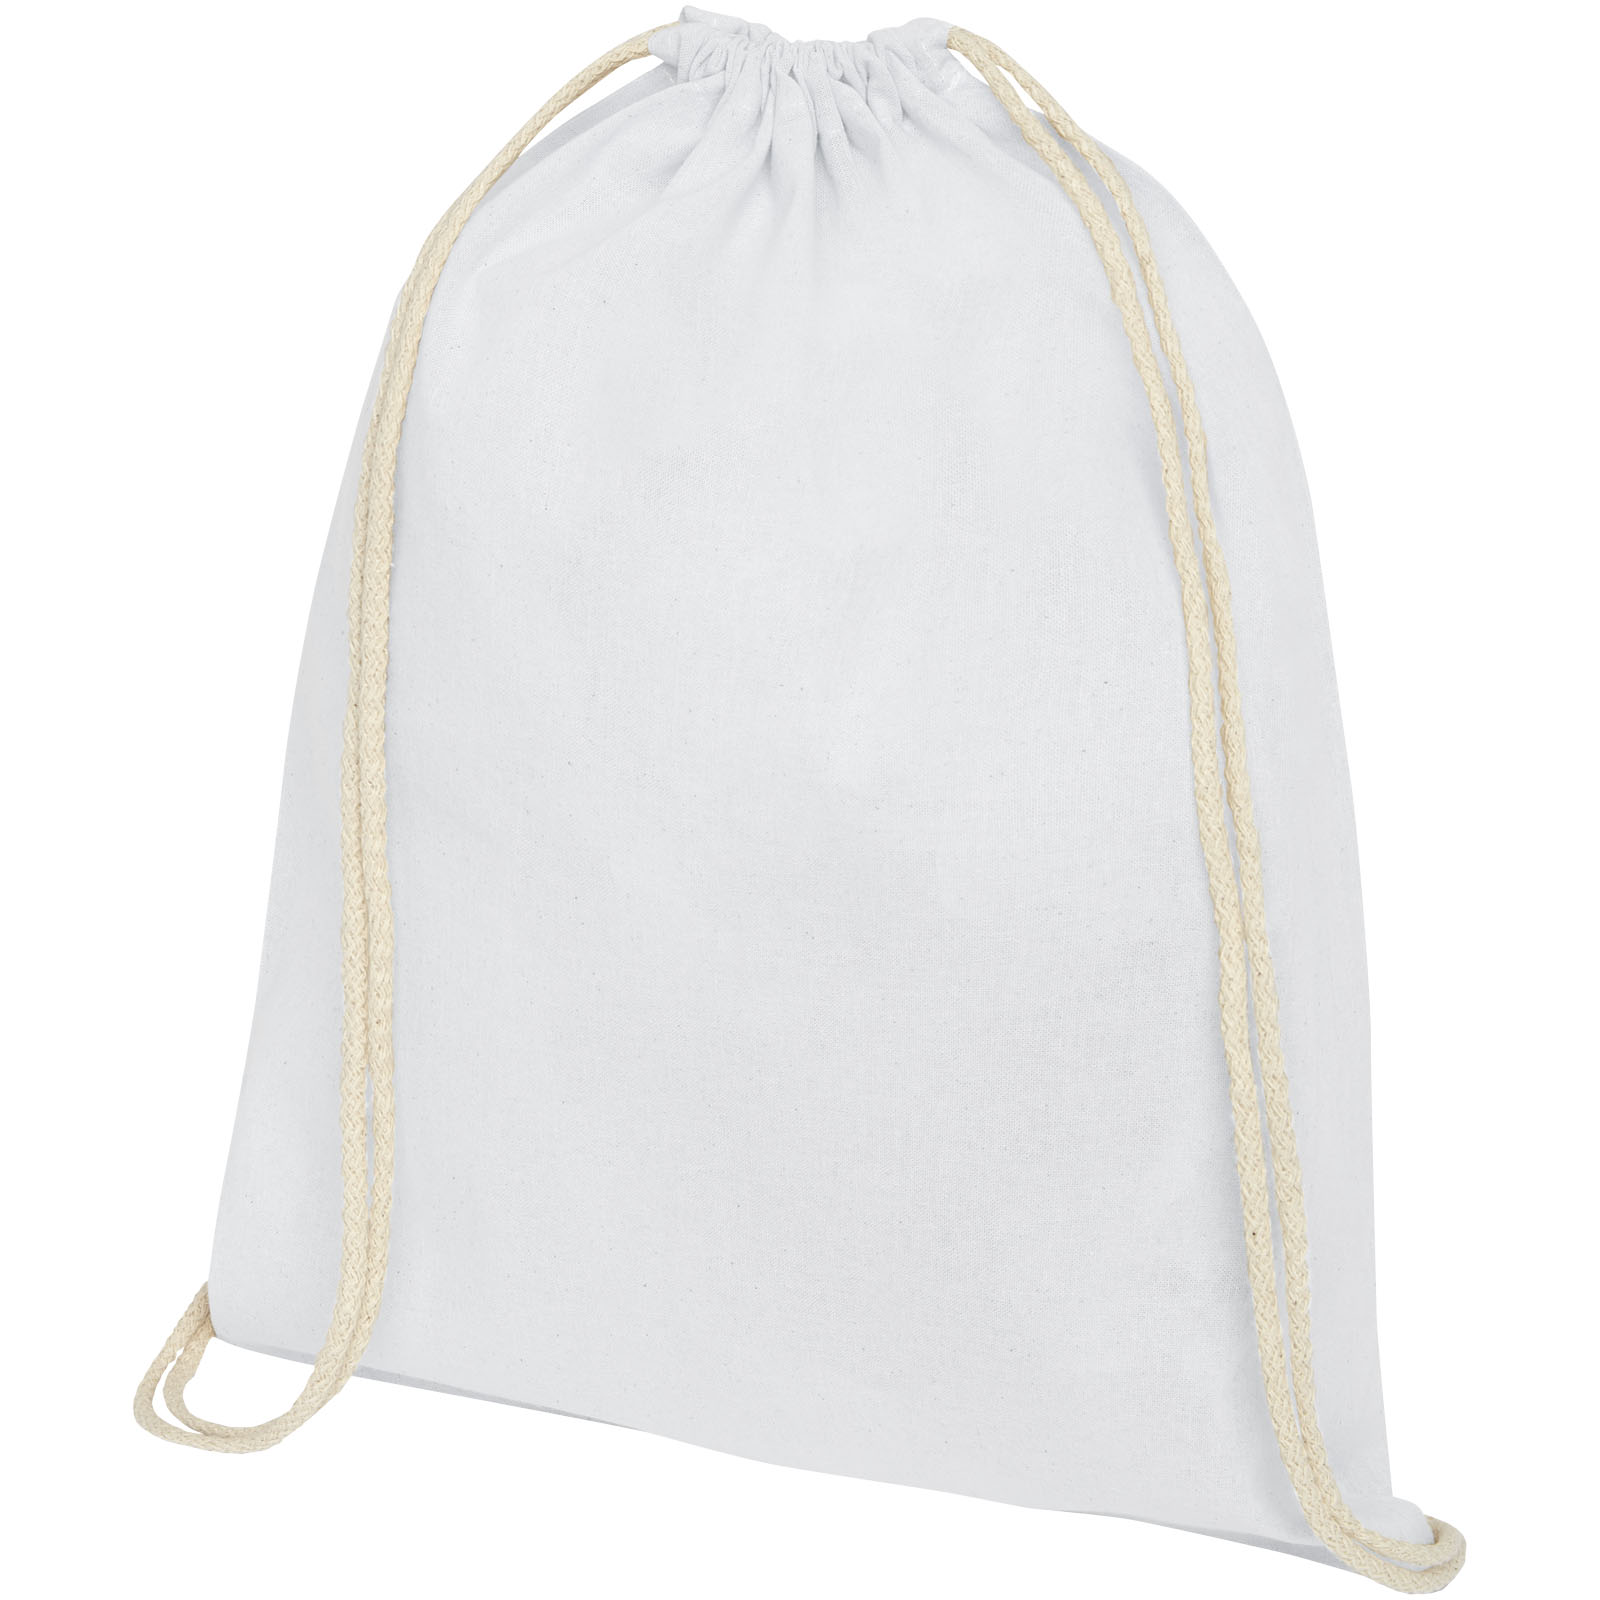 Advertising Drawstring Bags - Oregon 140 g/m² cotton drawstring bag 5L